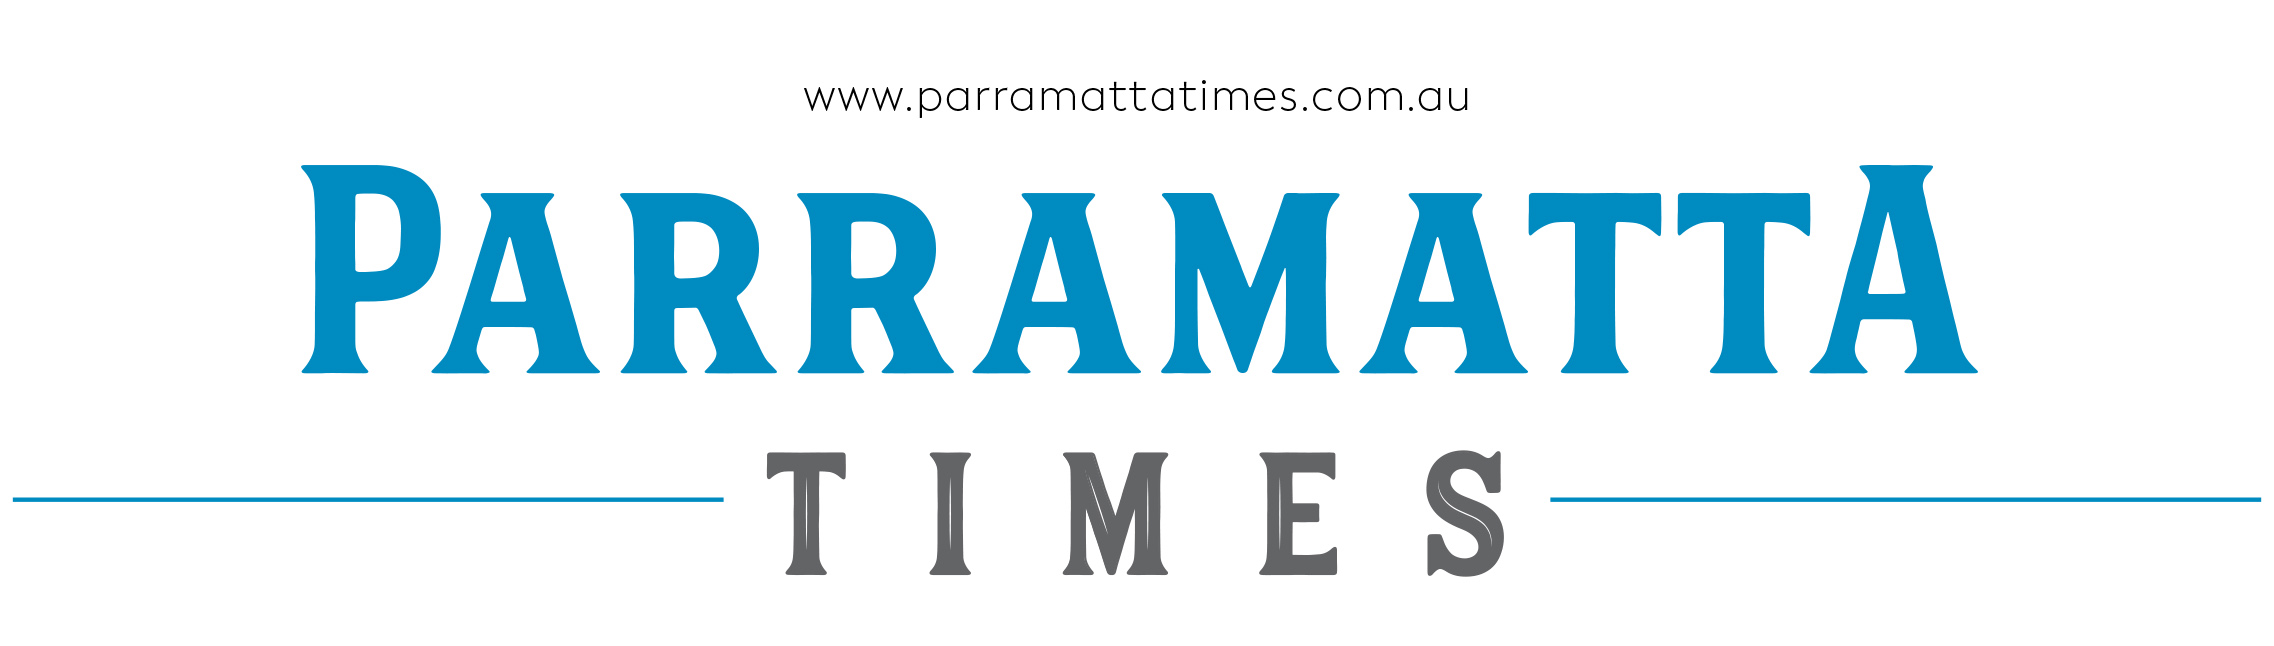 Parramatta Times